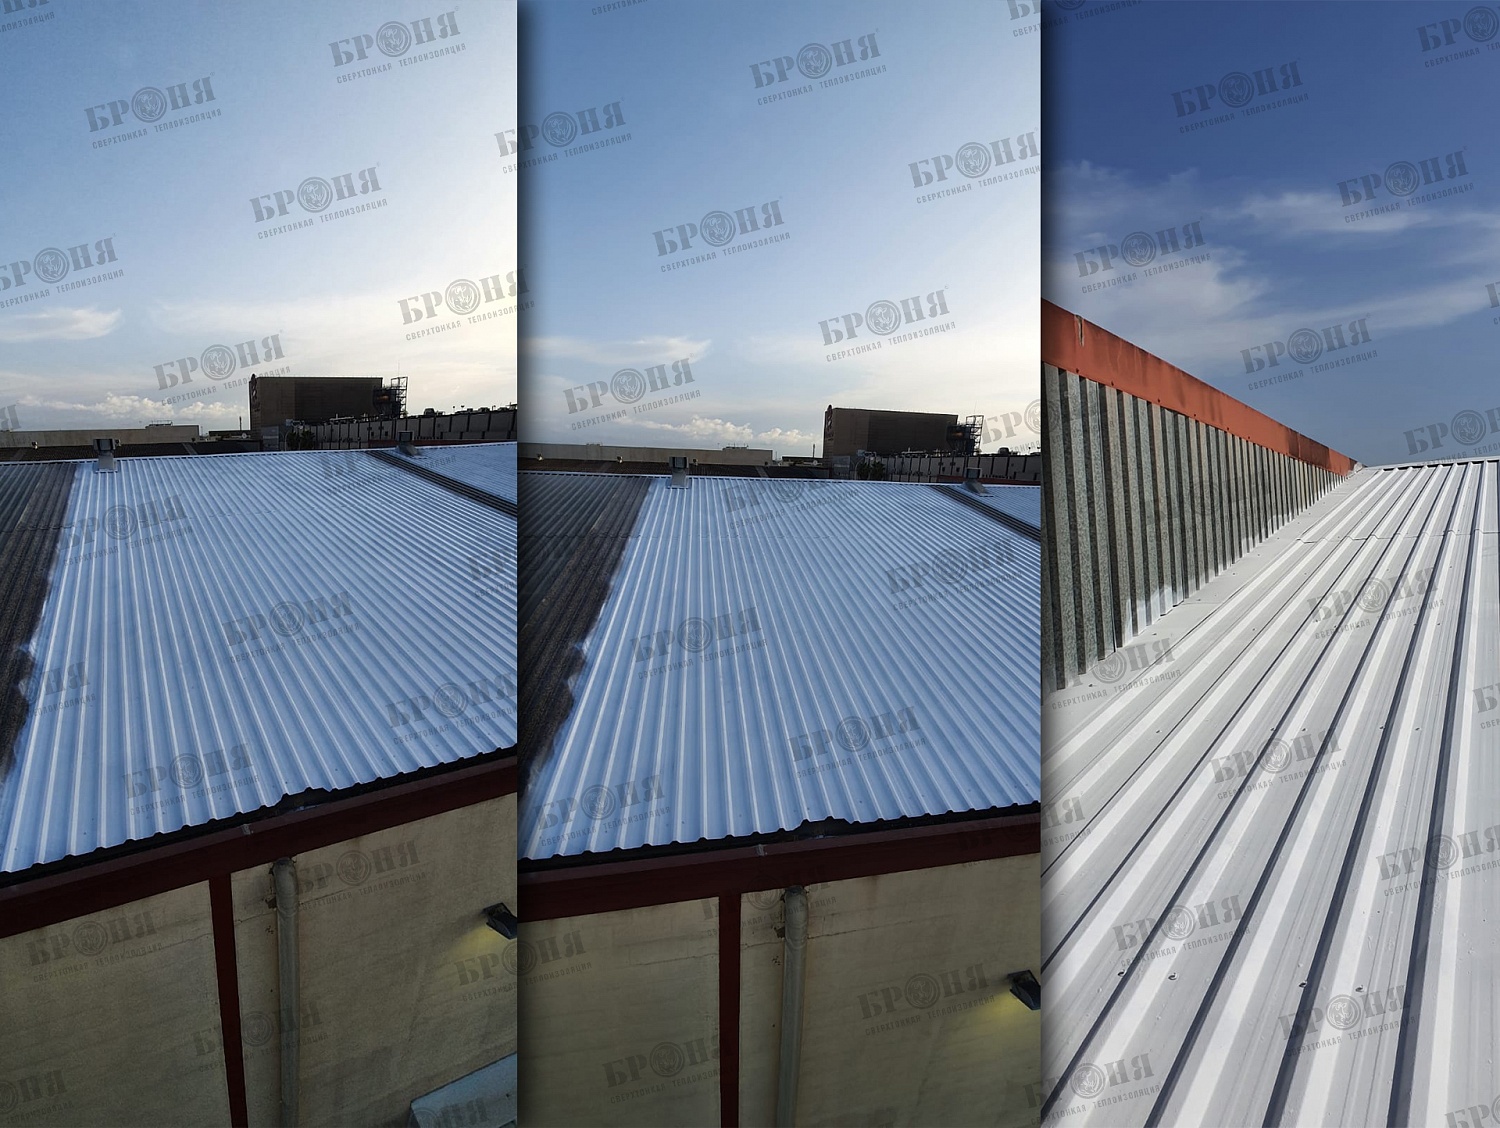 Представляем Вам отчет о проведенных работах по нанесению Броня Классик на крышу здания компании Agran Liquid Technology, г. Валенсия, Испания (фото)